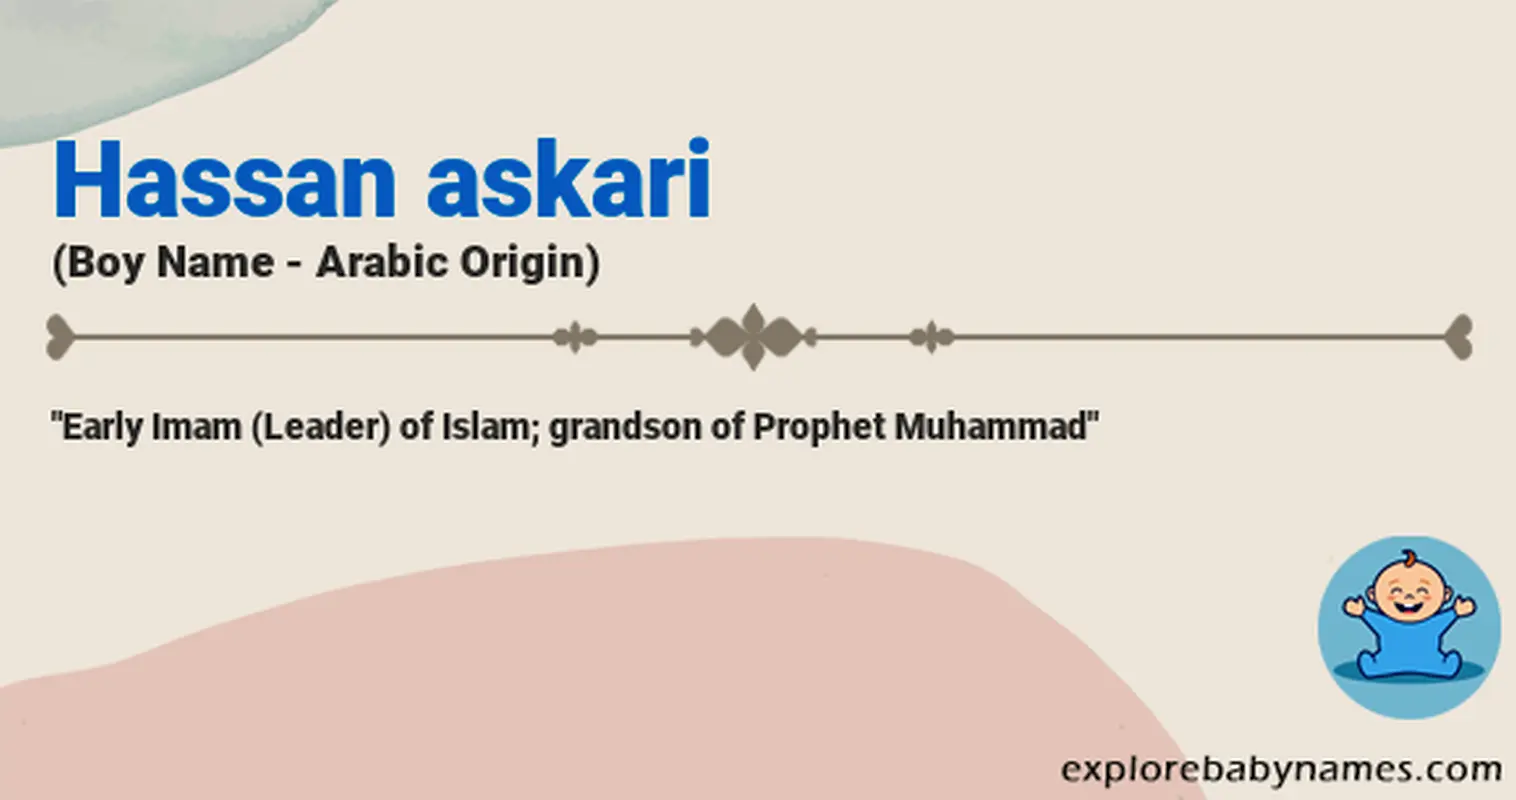 Meaning of Hassan askari